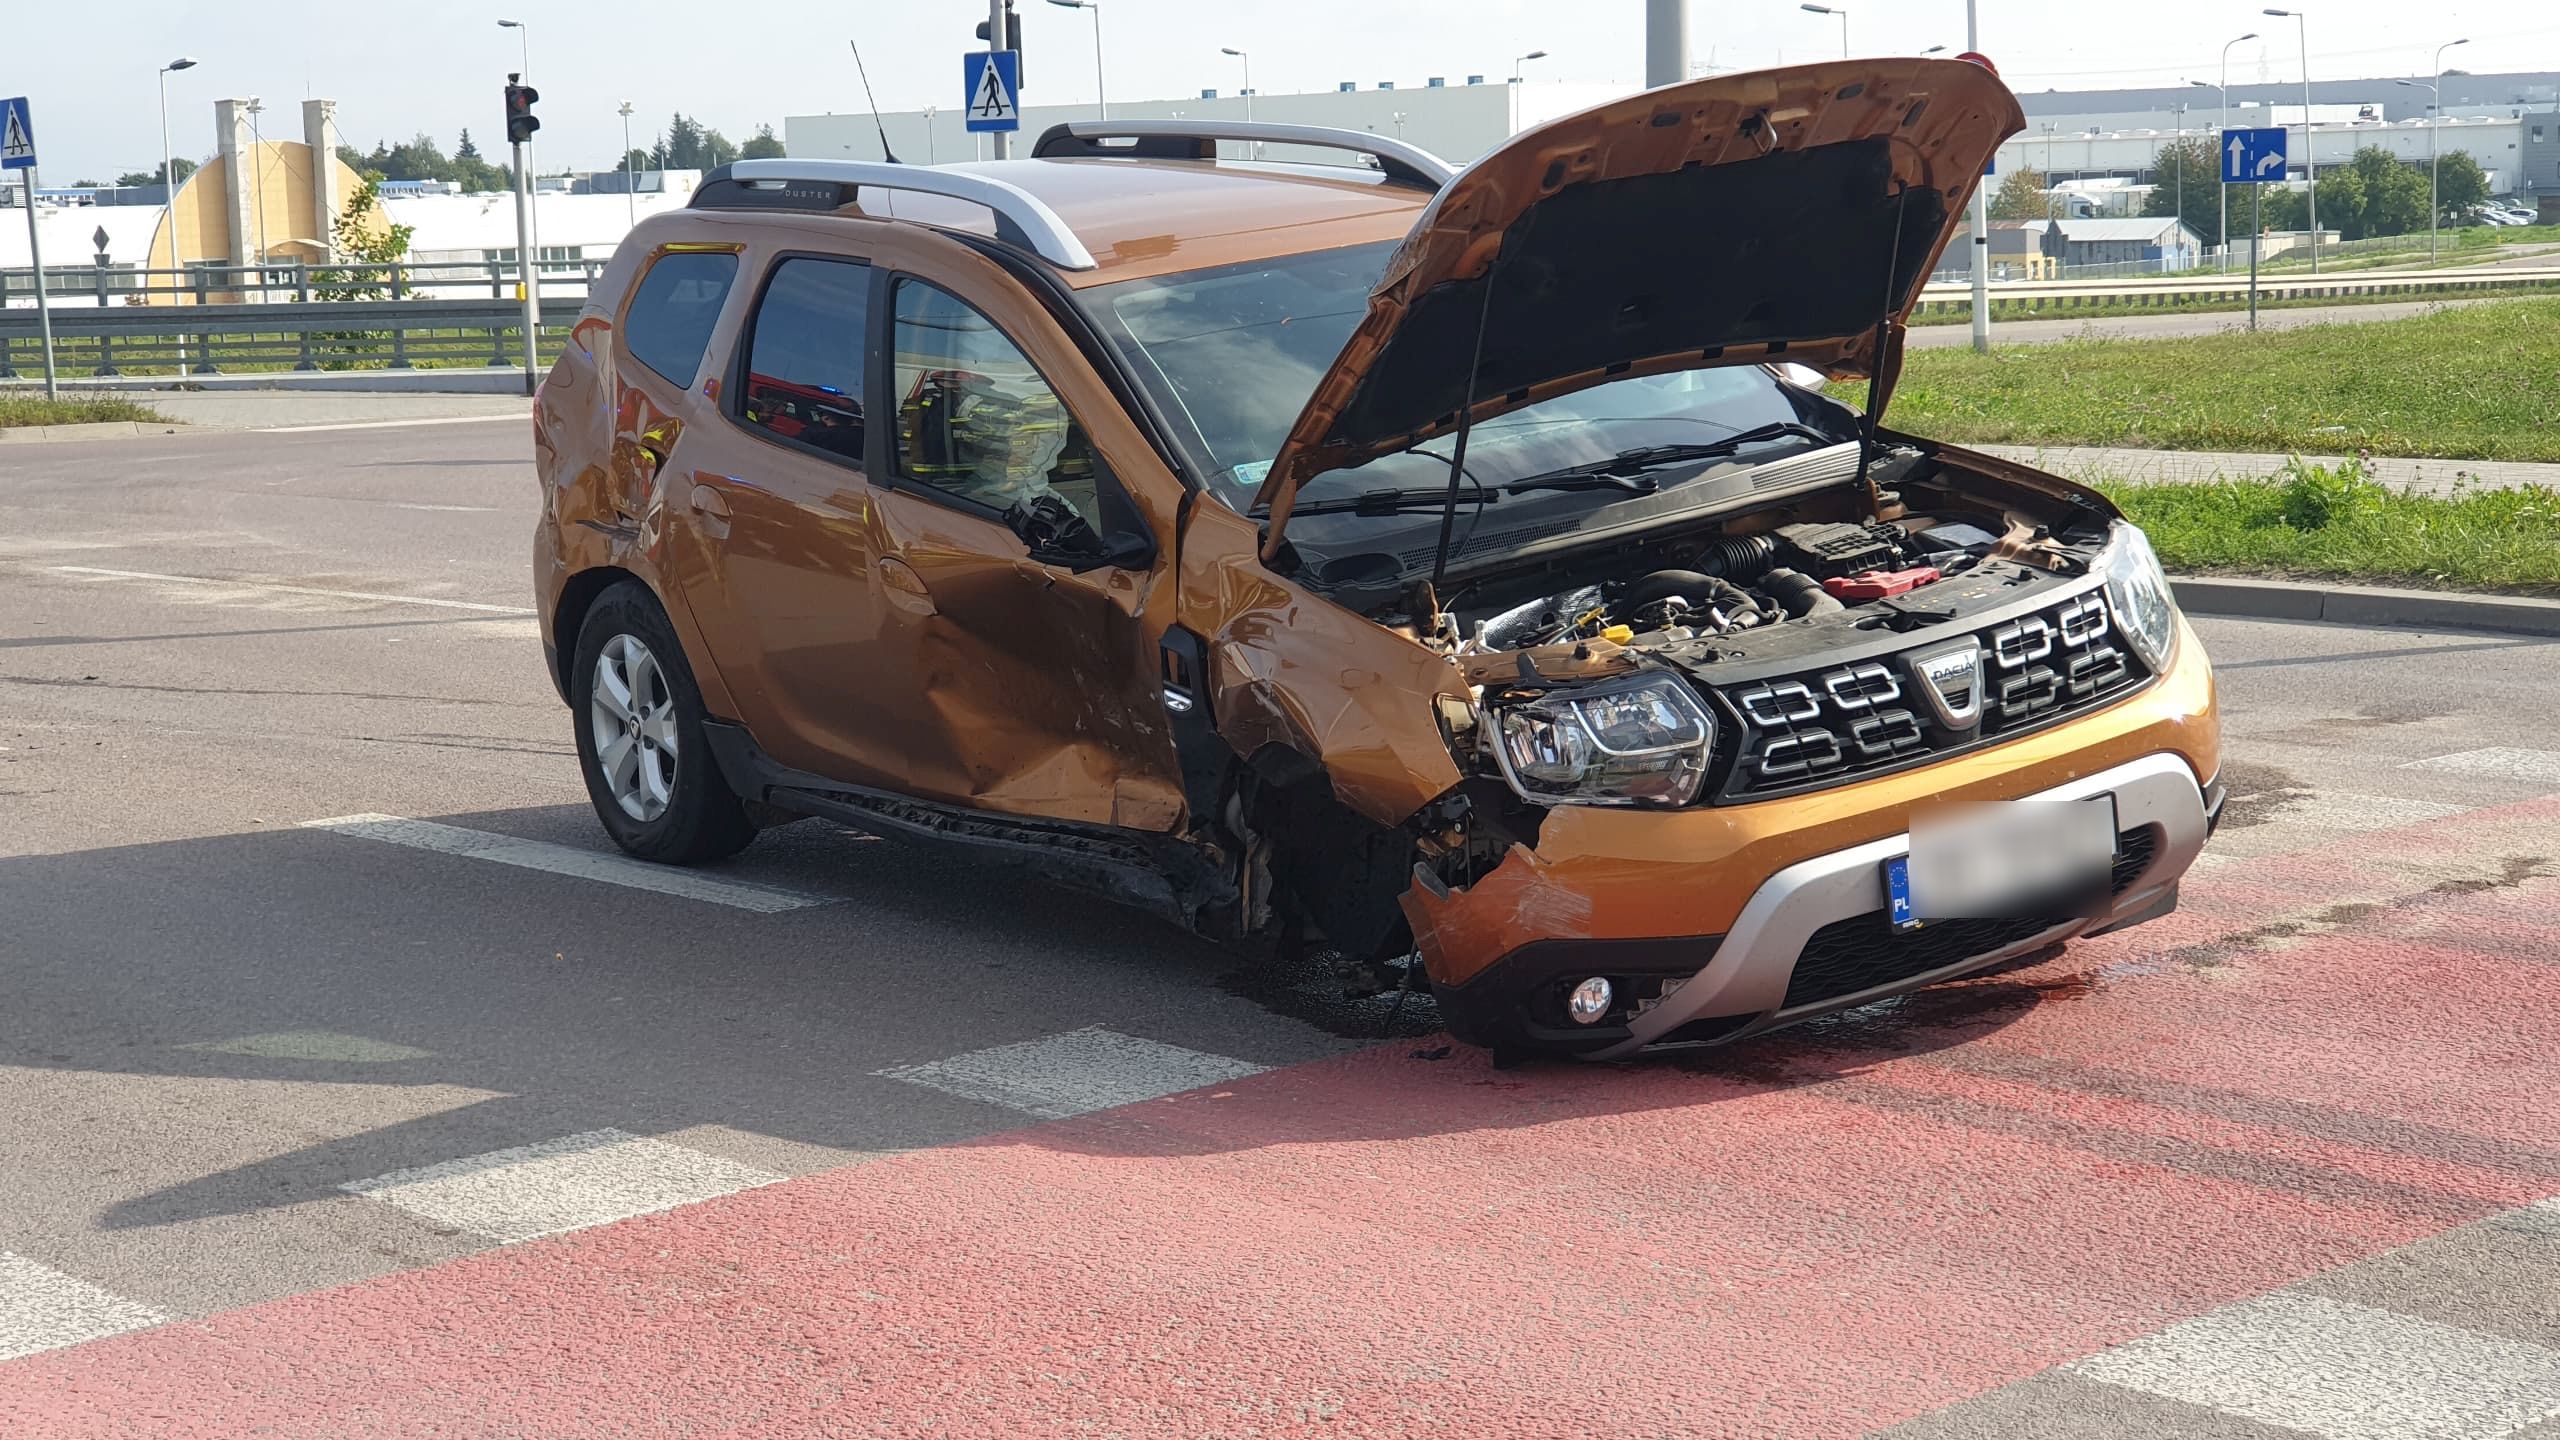 Dacia zderzyła się z hondą, obaj kierowcy zapewniali, że mieli zielone. Monitoring pokazał prawdę (zdjęcia)